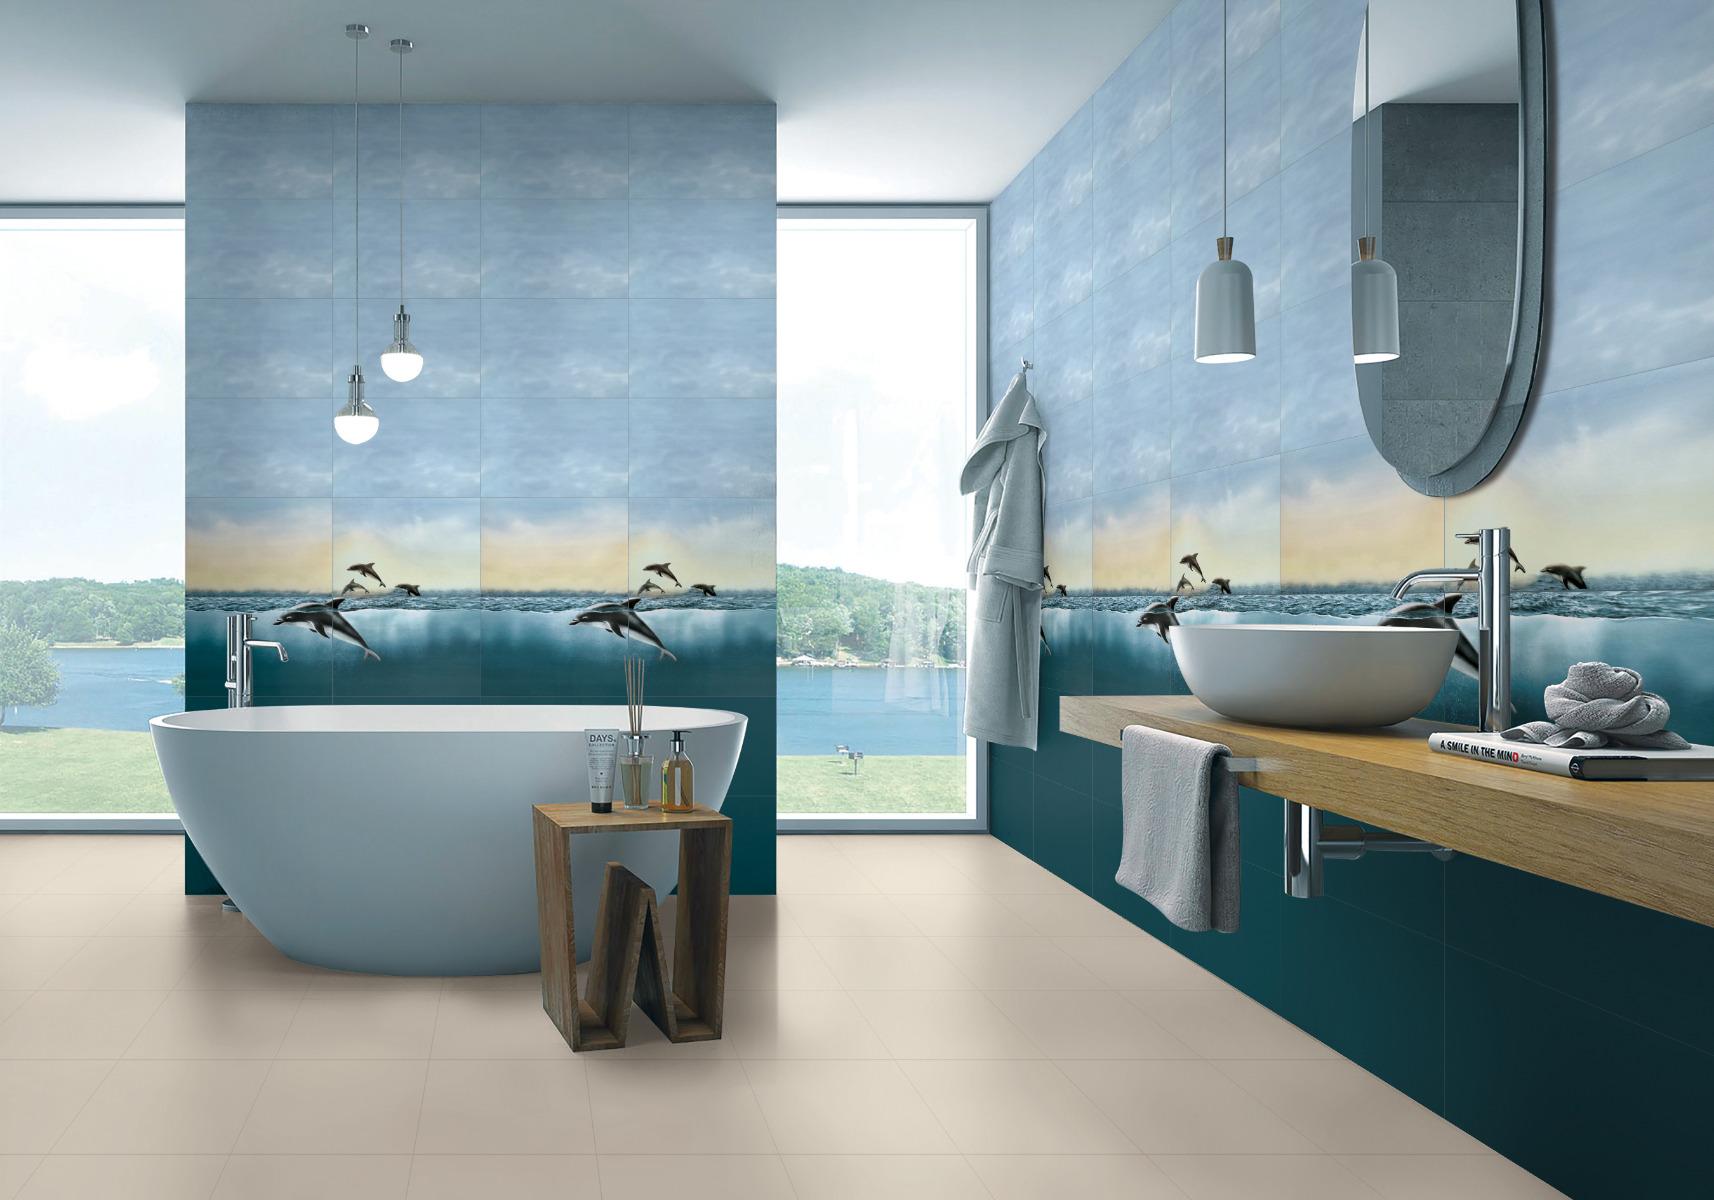 Dolphin Tiles for Bathroom Tiles